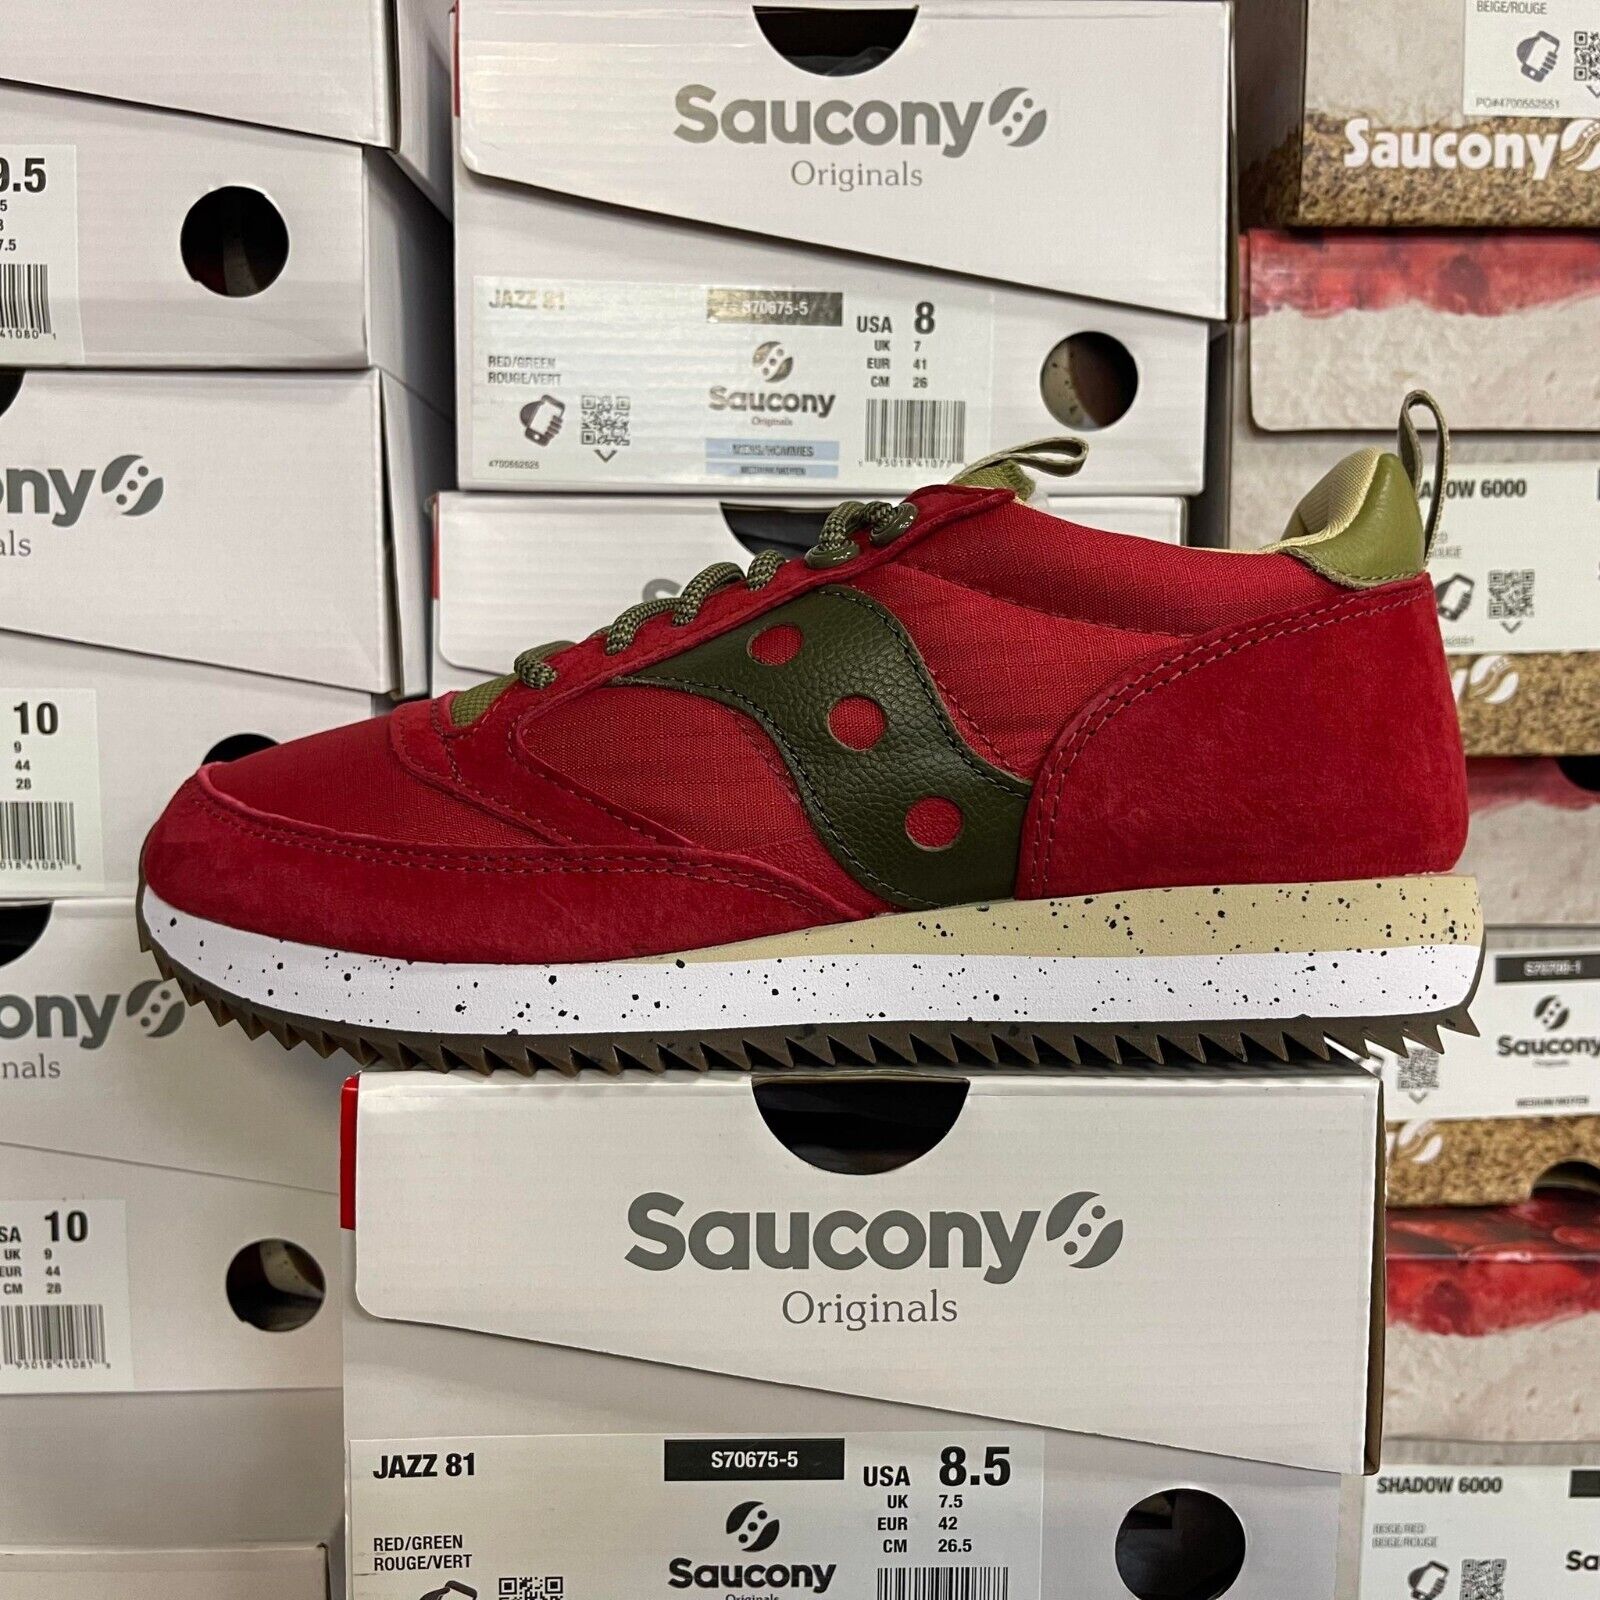 SAUCONY JAZZ 81 RED/GREEN MEN SNEAKER | eBay